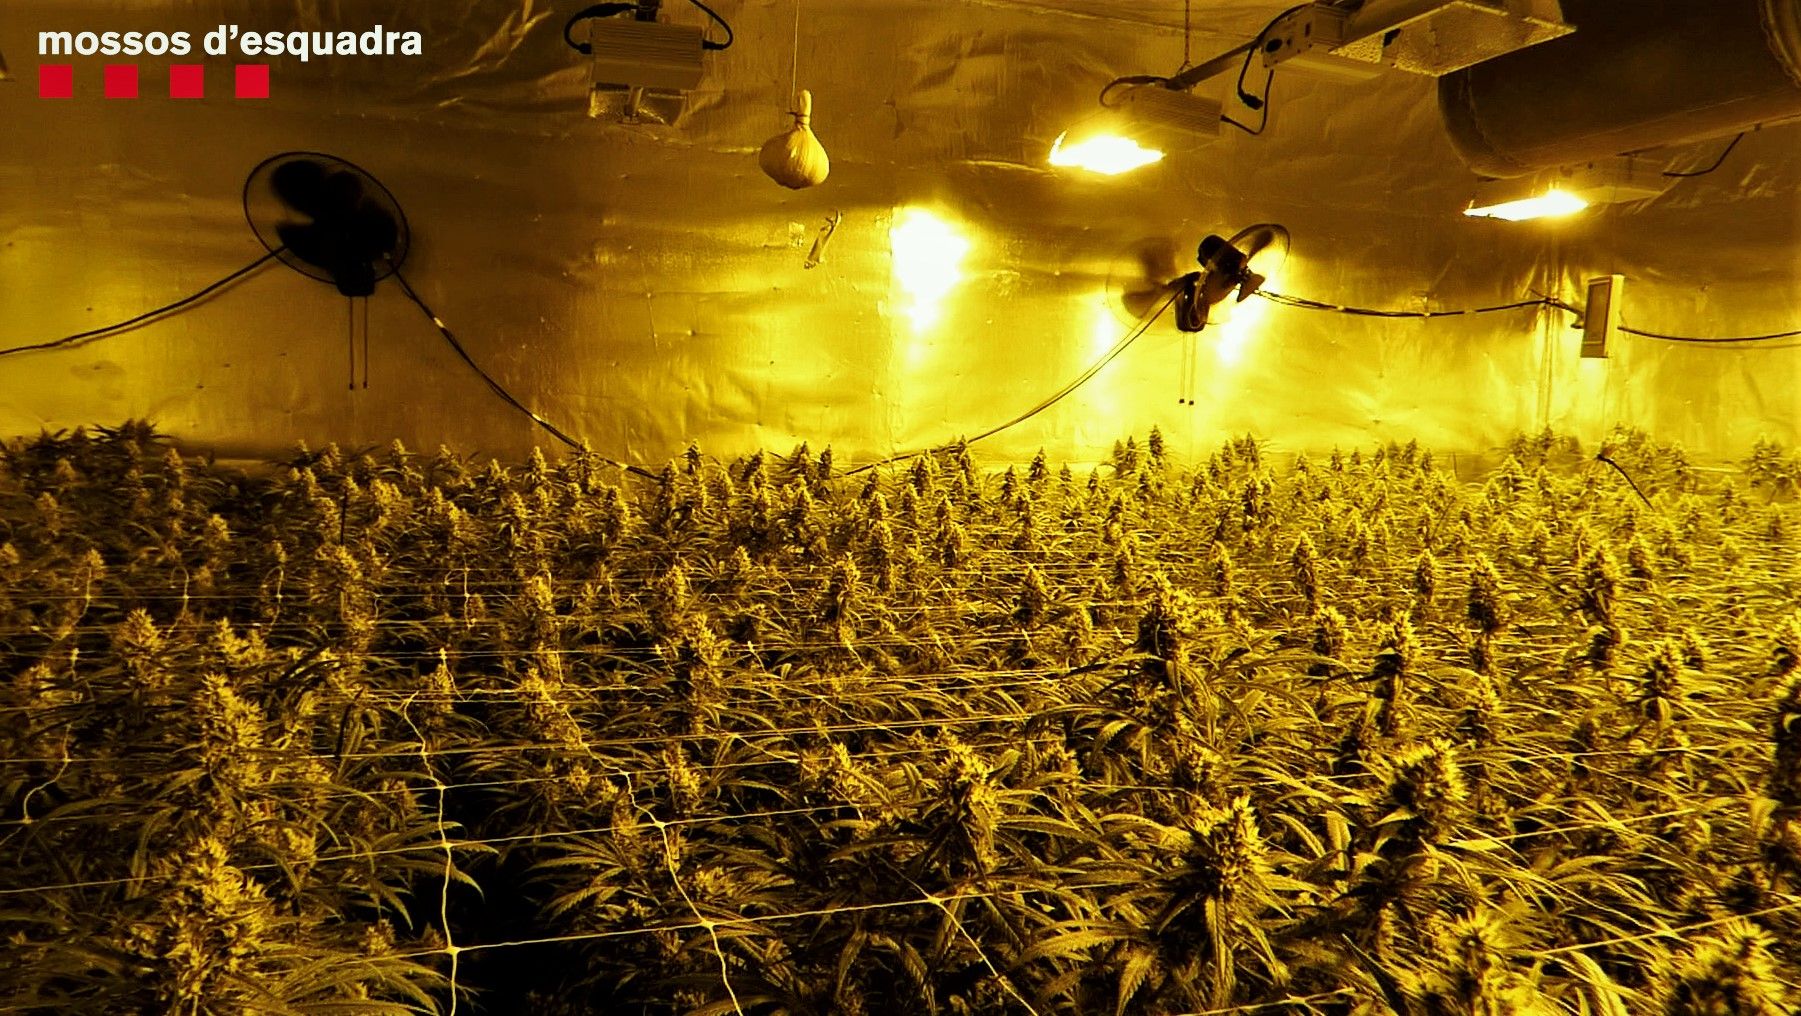 Plantación de marihuana decomisada en una nace de Cornellà.